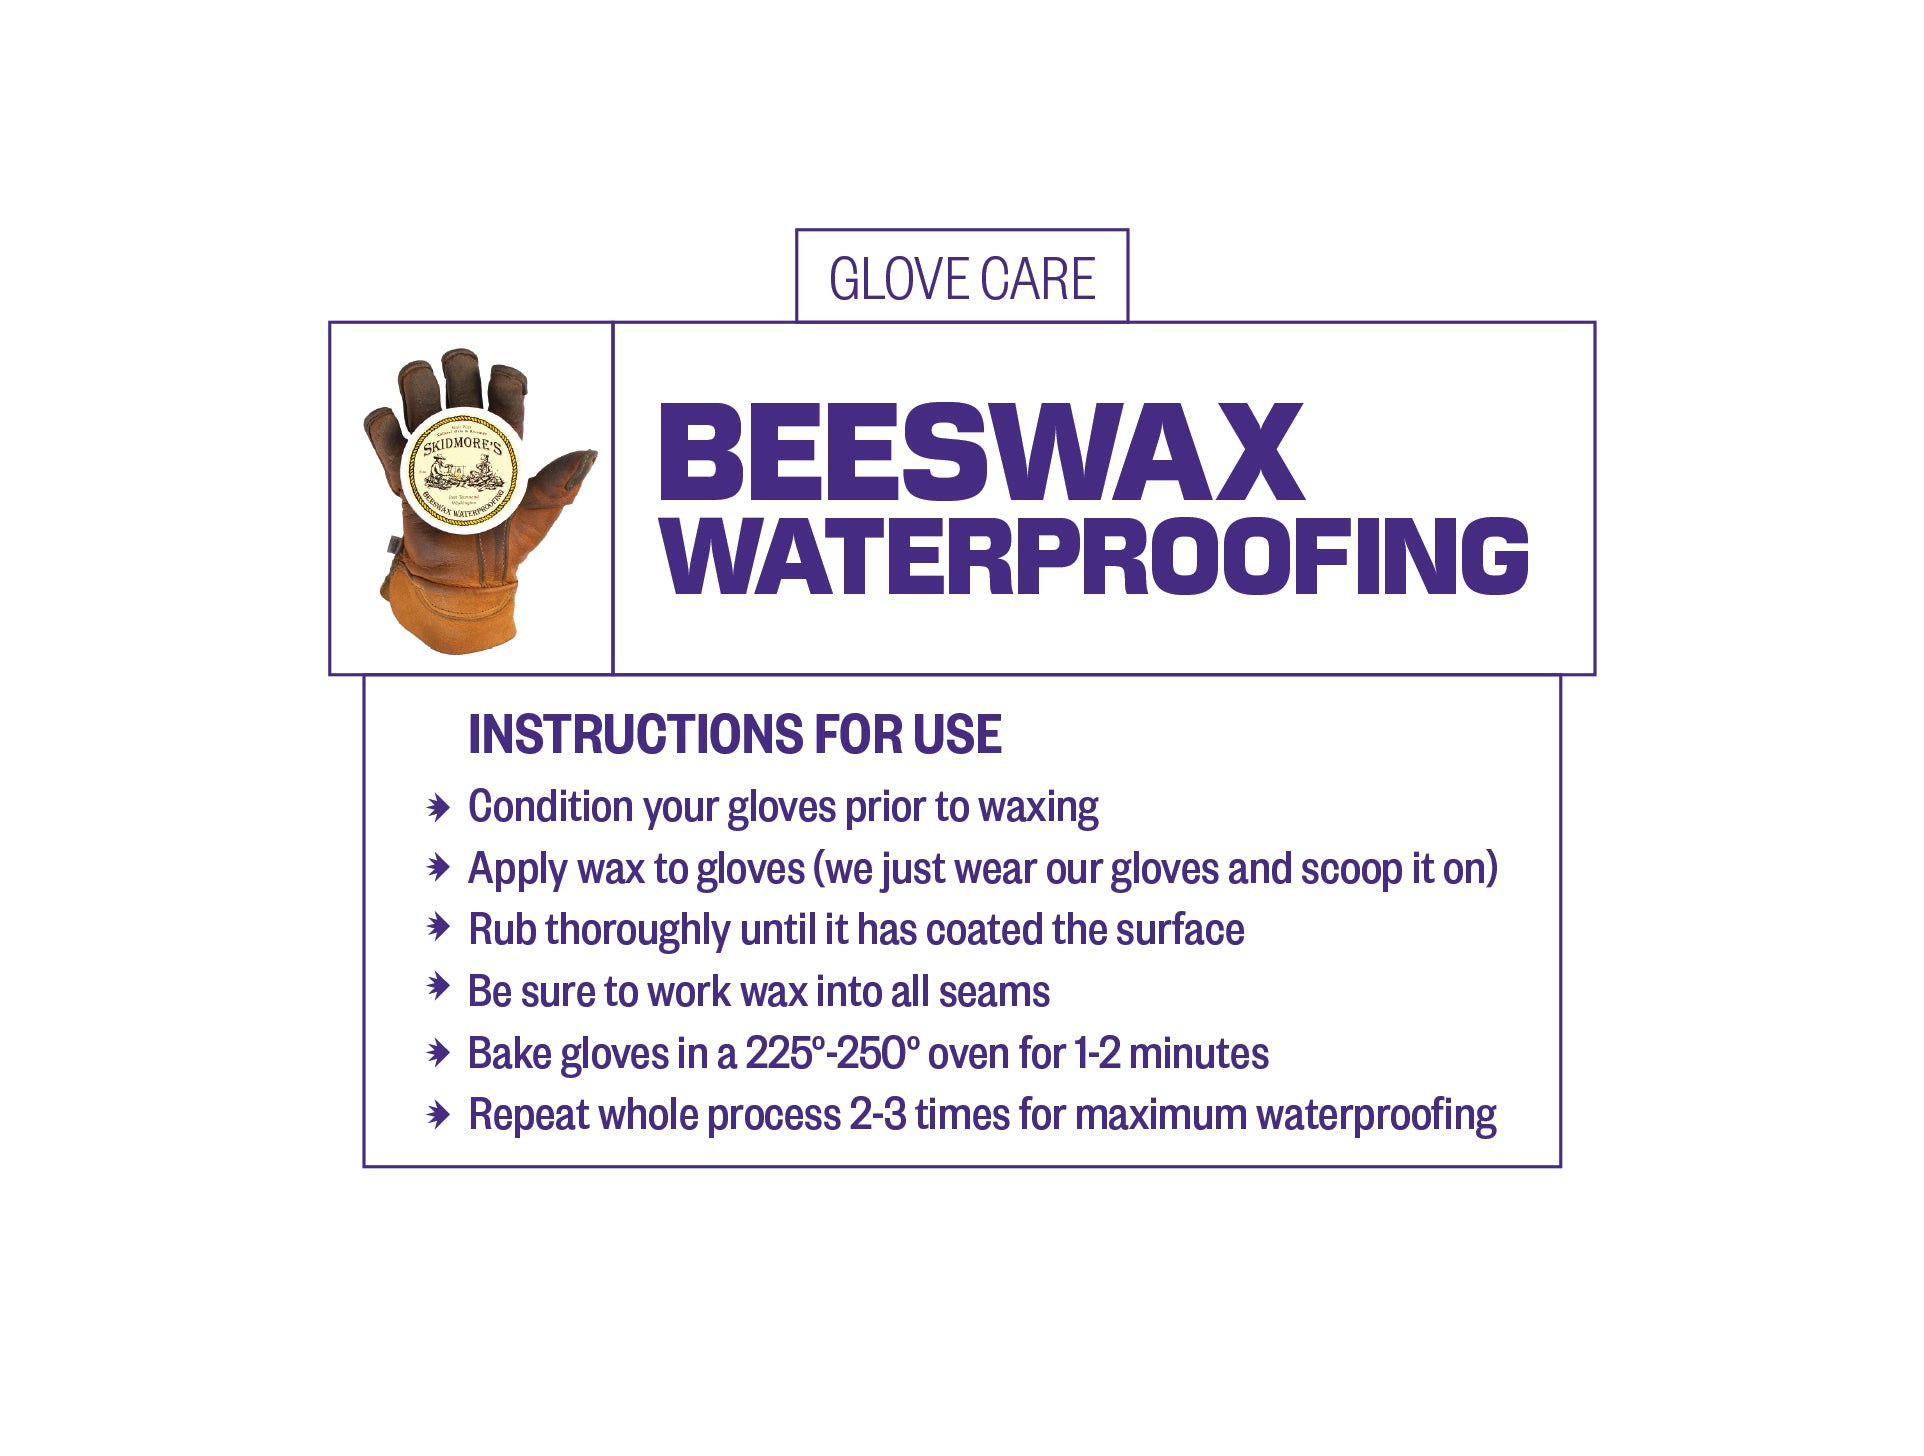 Beeswax Waterproofing